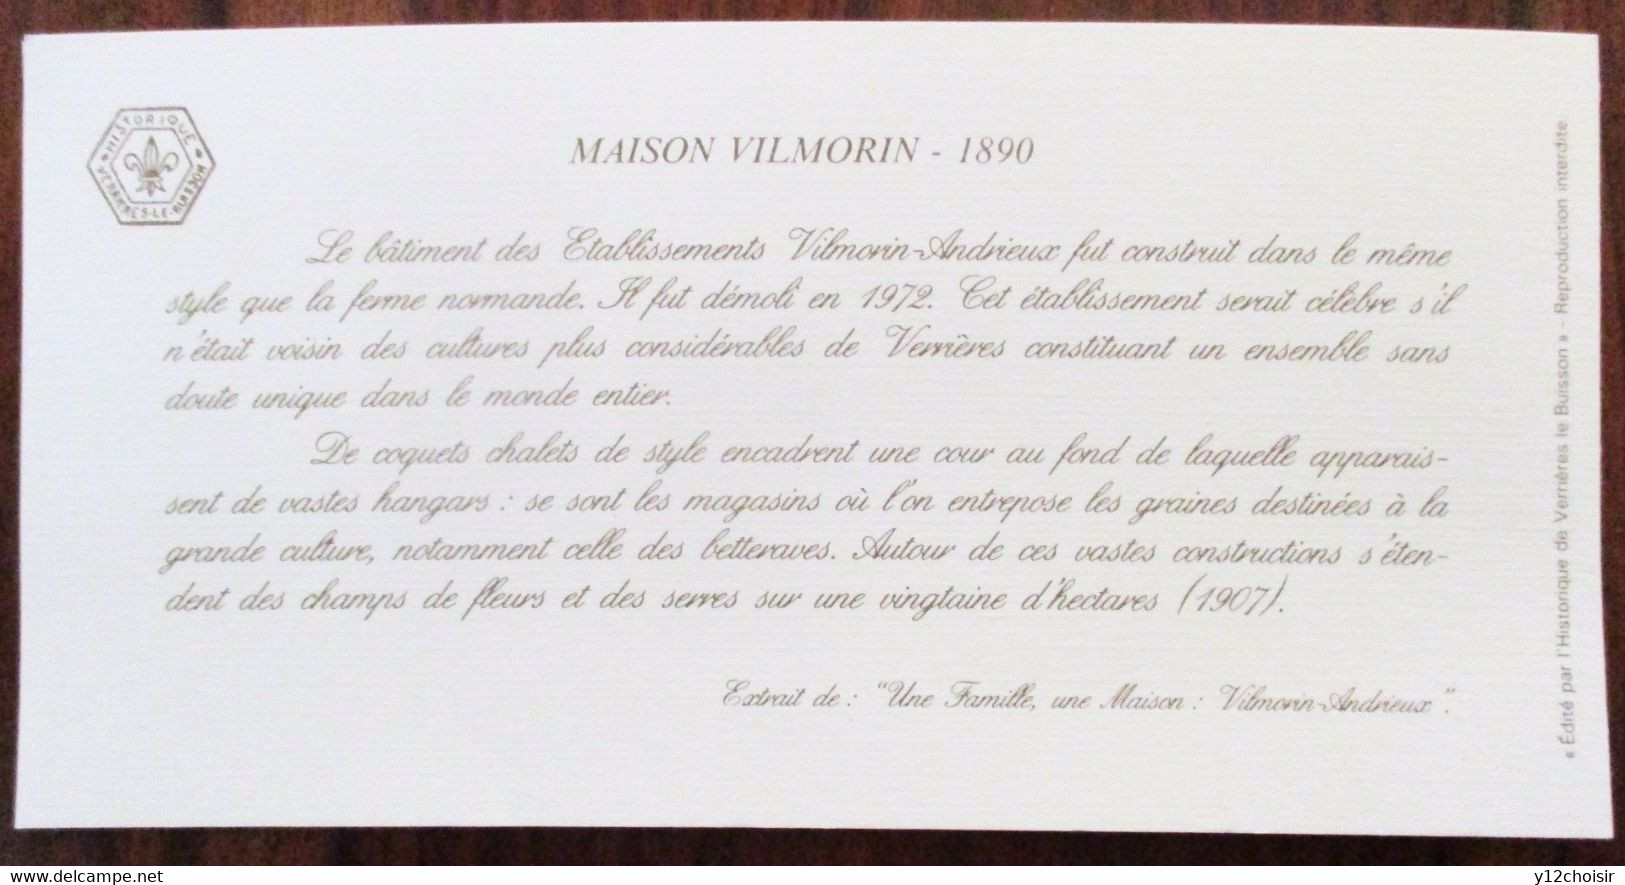 FEUILLET CARTE MAISON VILMORIN 1890 MASSY VILLAINES HISTORIQUE VERRIERES-LE-BUISSON ESSONNE 91 - Publicités